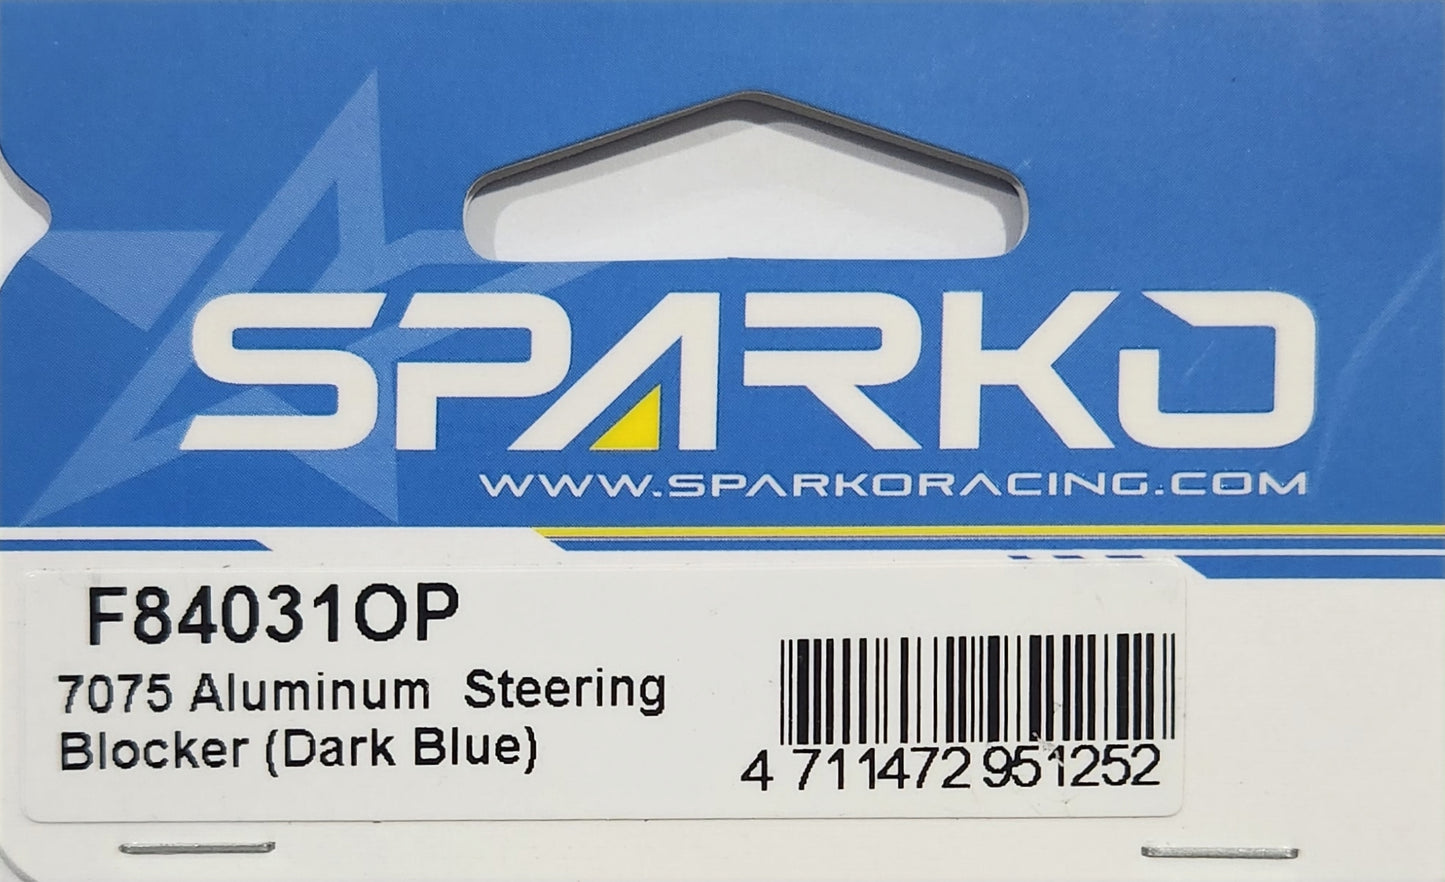 Sparko Racing 7075 Aluminium Steering Blocker (Dark Blue)